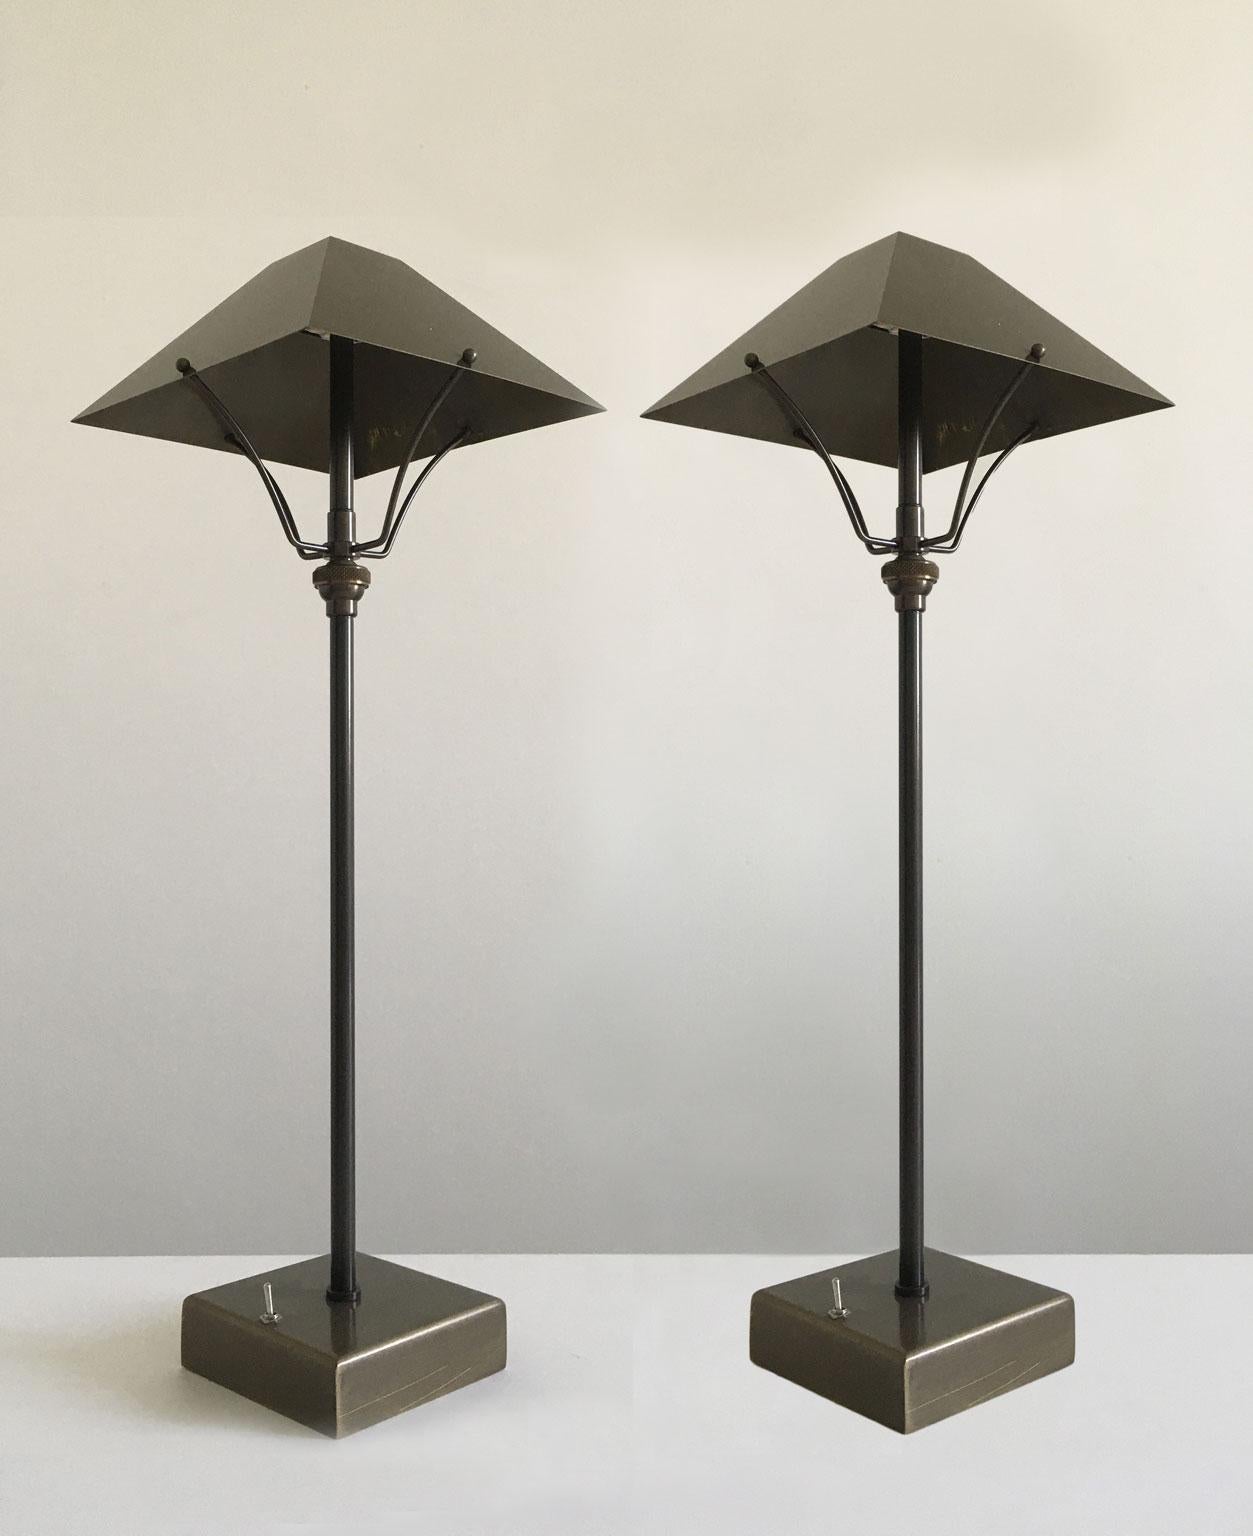 Dieses charmante Paar Tischlampen aus Messing wird in Italien aus Messing mit brünierter Oberfläche hergestellt.
Sein innovatives Merkmal ist, dass er kabellos ist, d.h. man kann ihn ohne Kontakt mit dem Stromnetz einschalten. Die Tischlampen